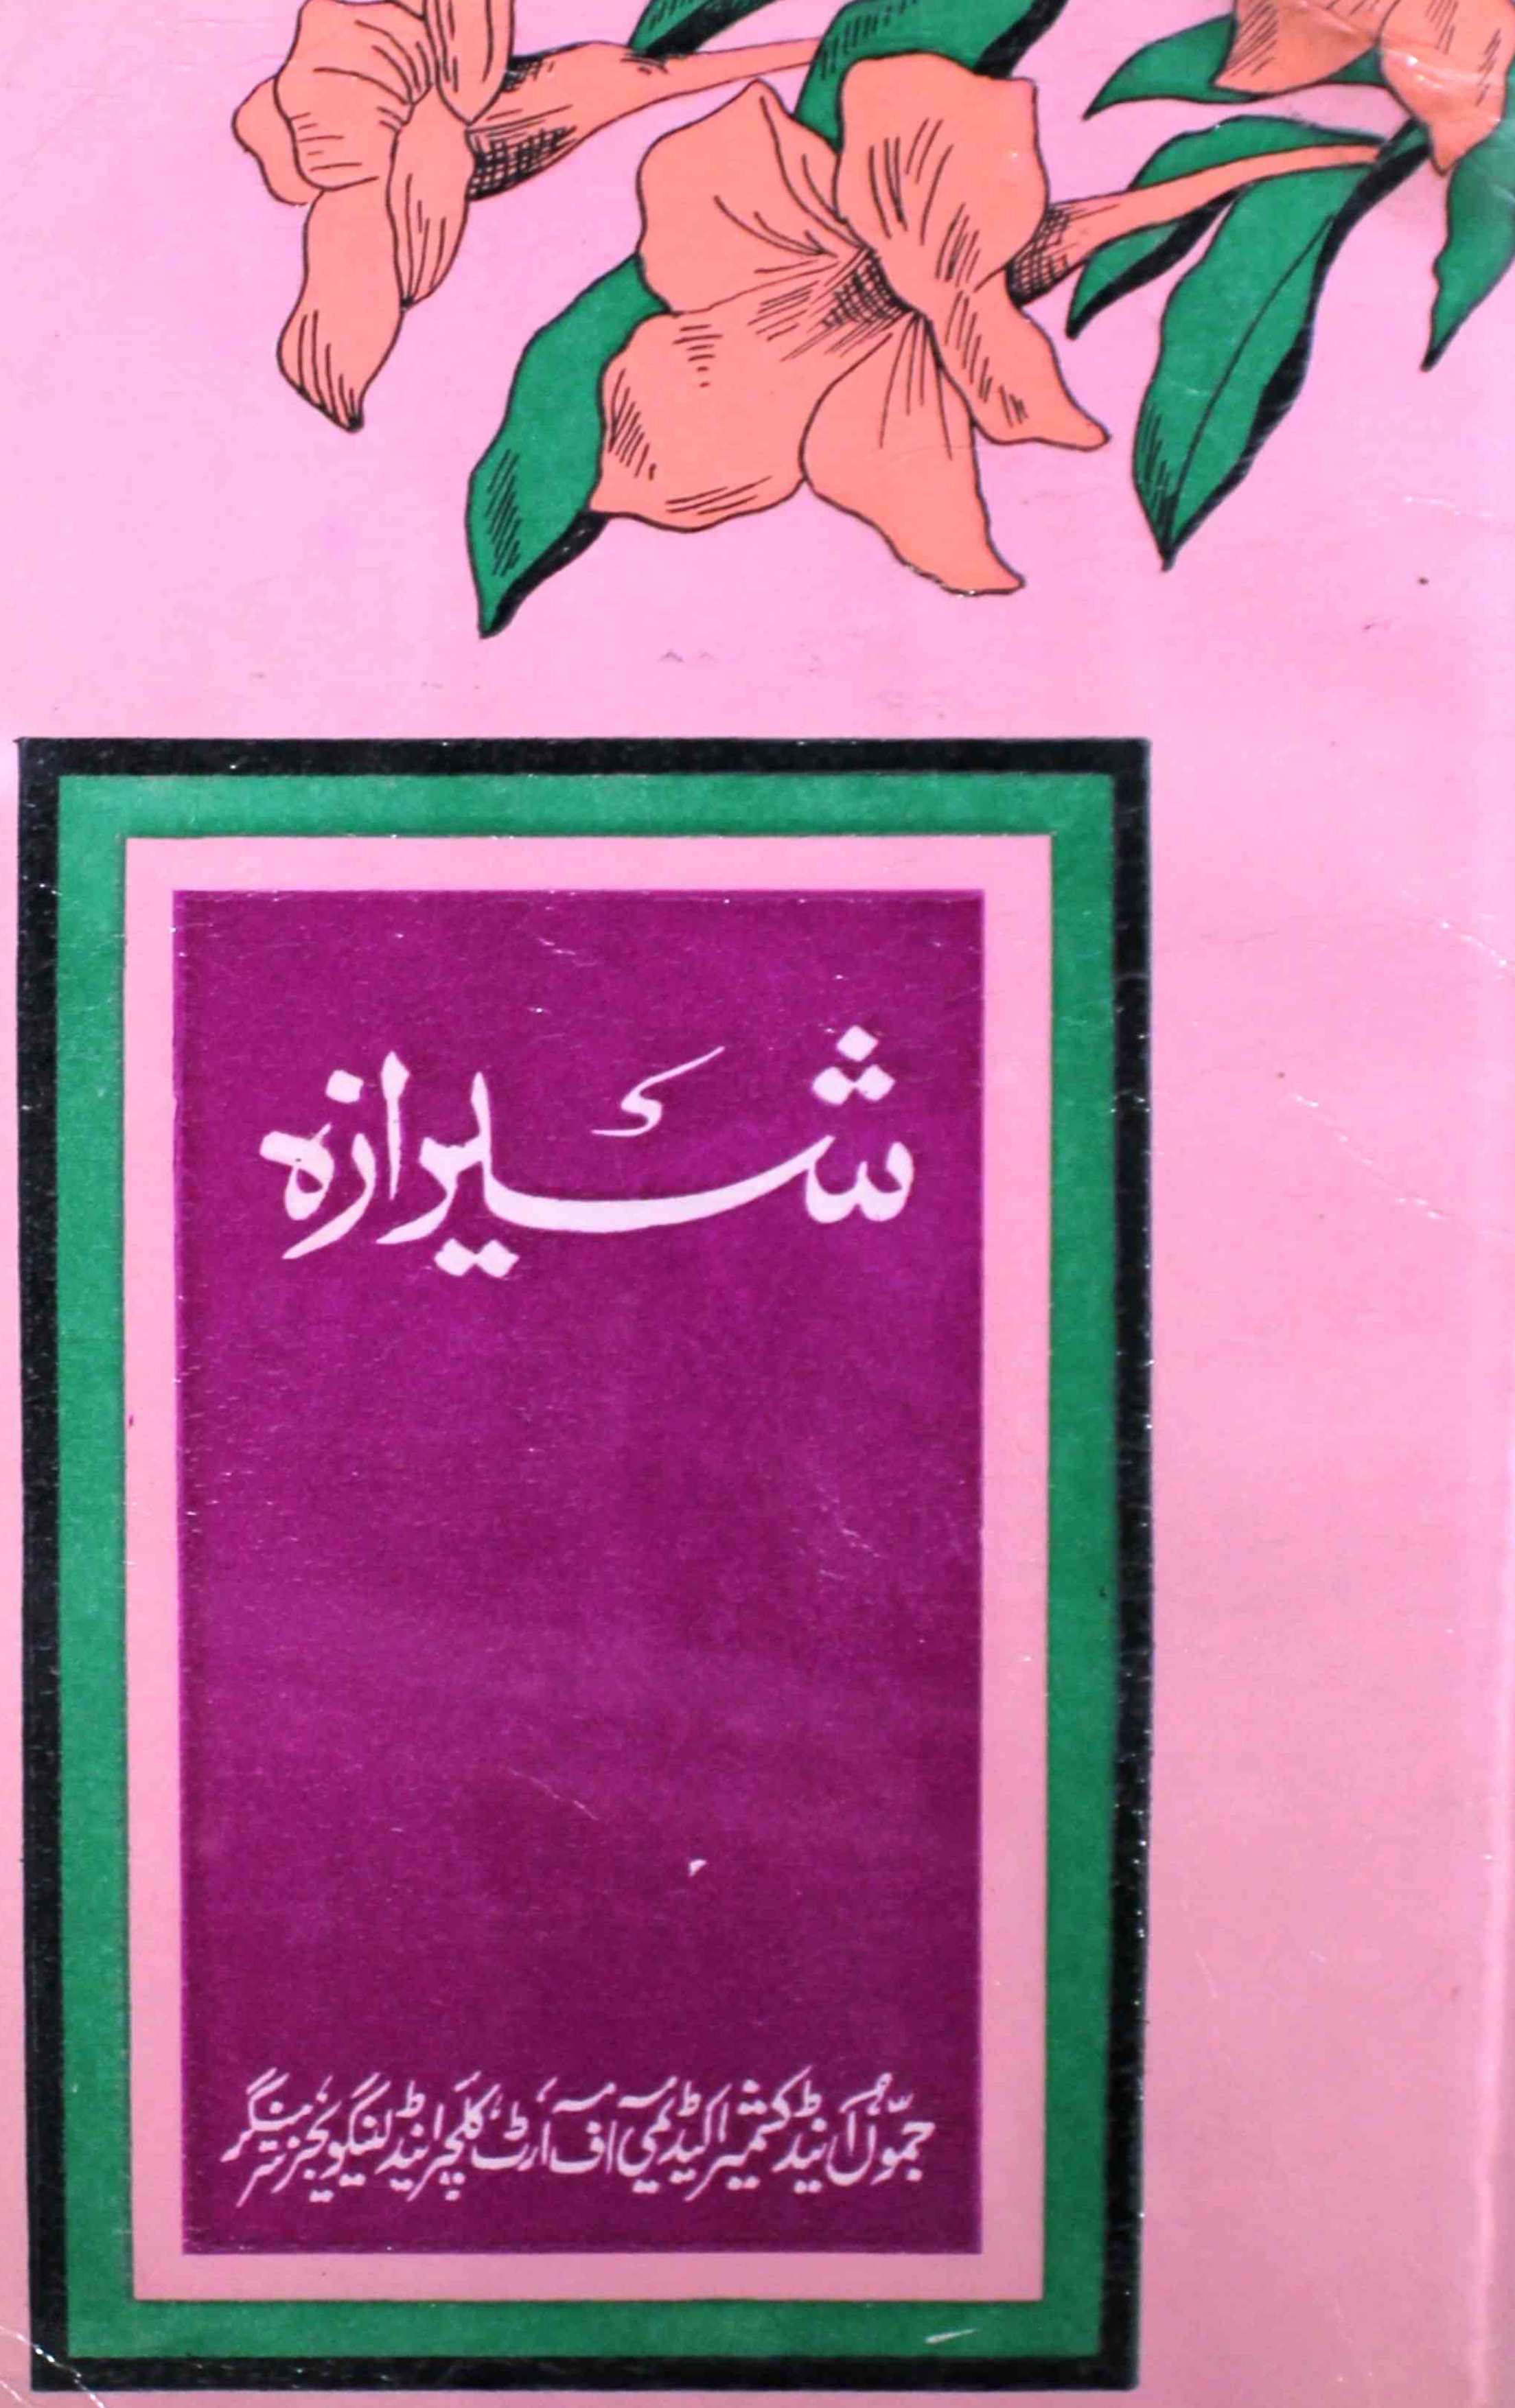 sheeraza-shumara-number-006-mohammad-ahmad-andarabi-magazines-1